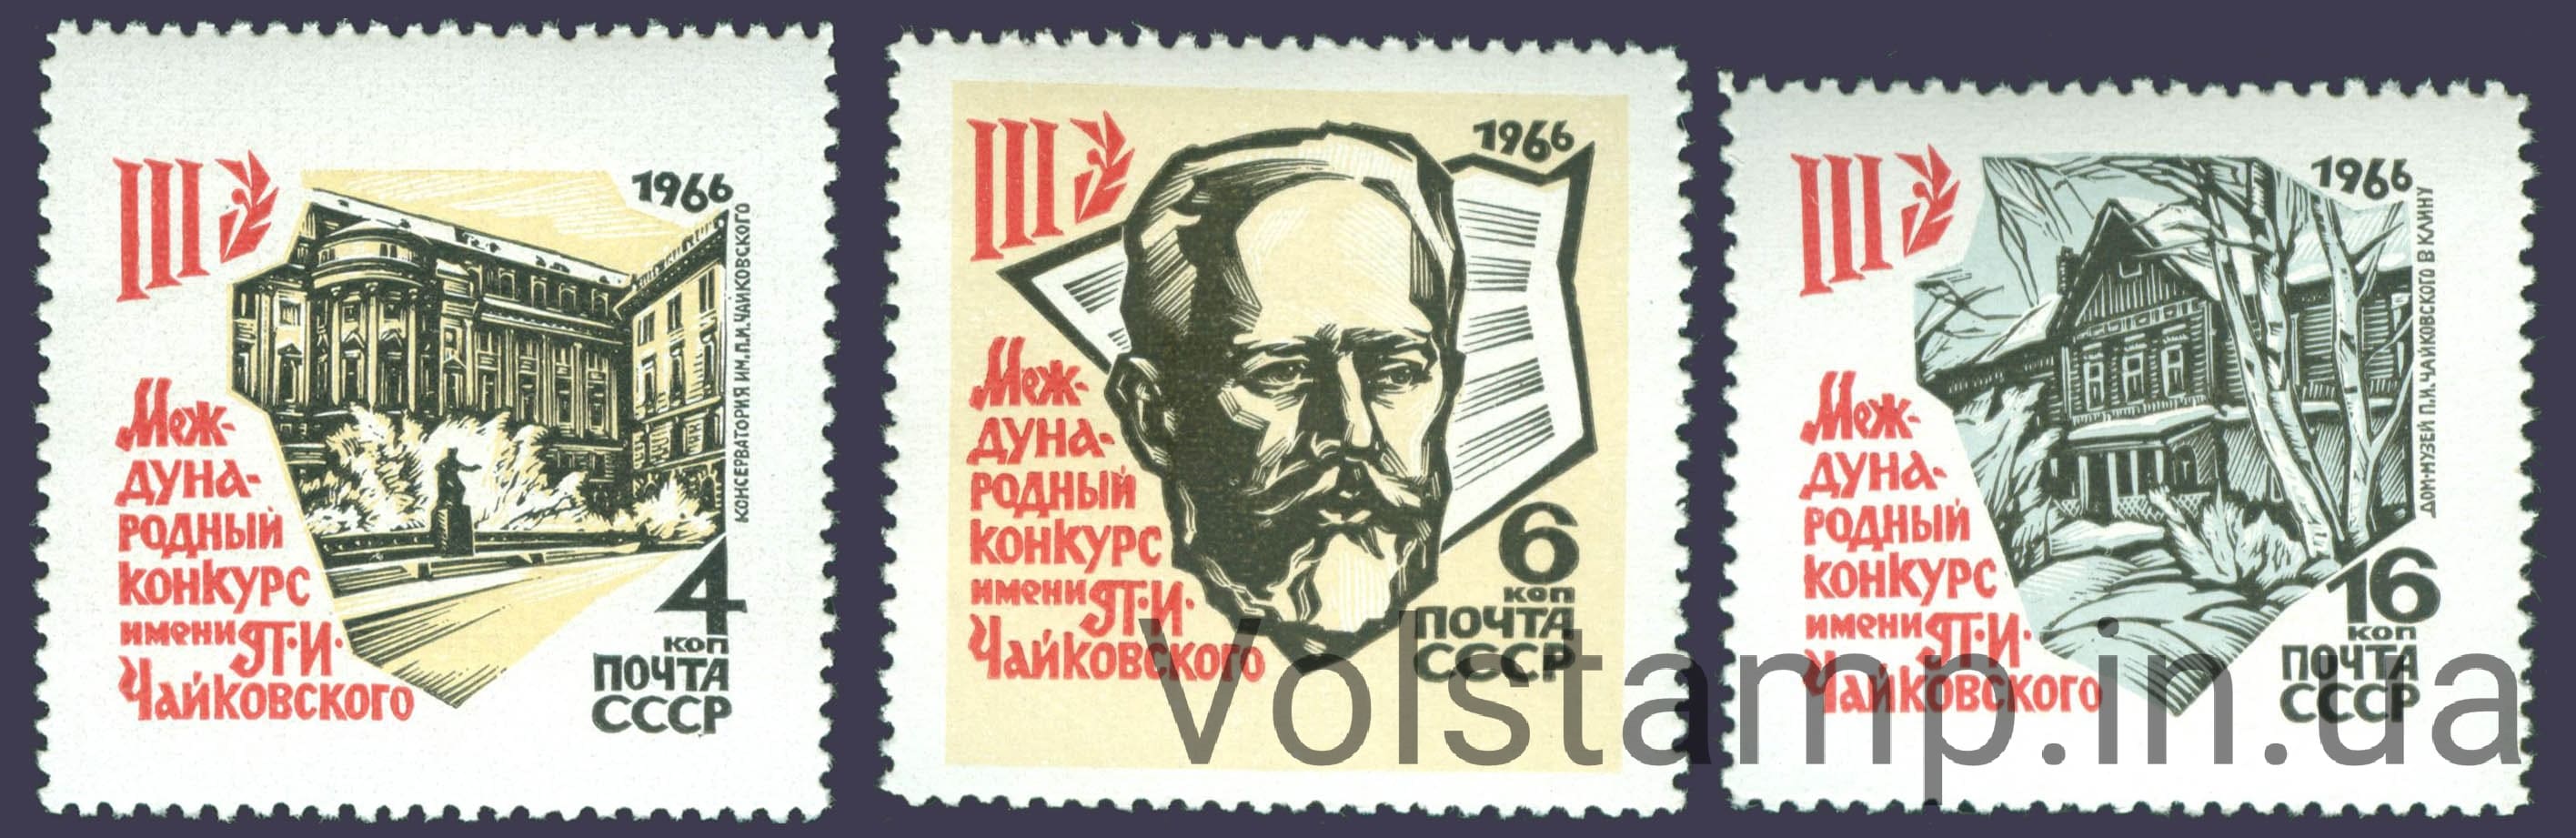 1966 серия марок III Международный конкурс имени П.И.Чайковского в Москве №3277-3279